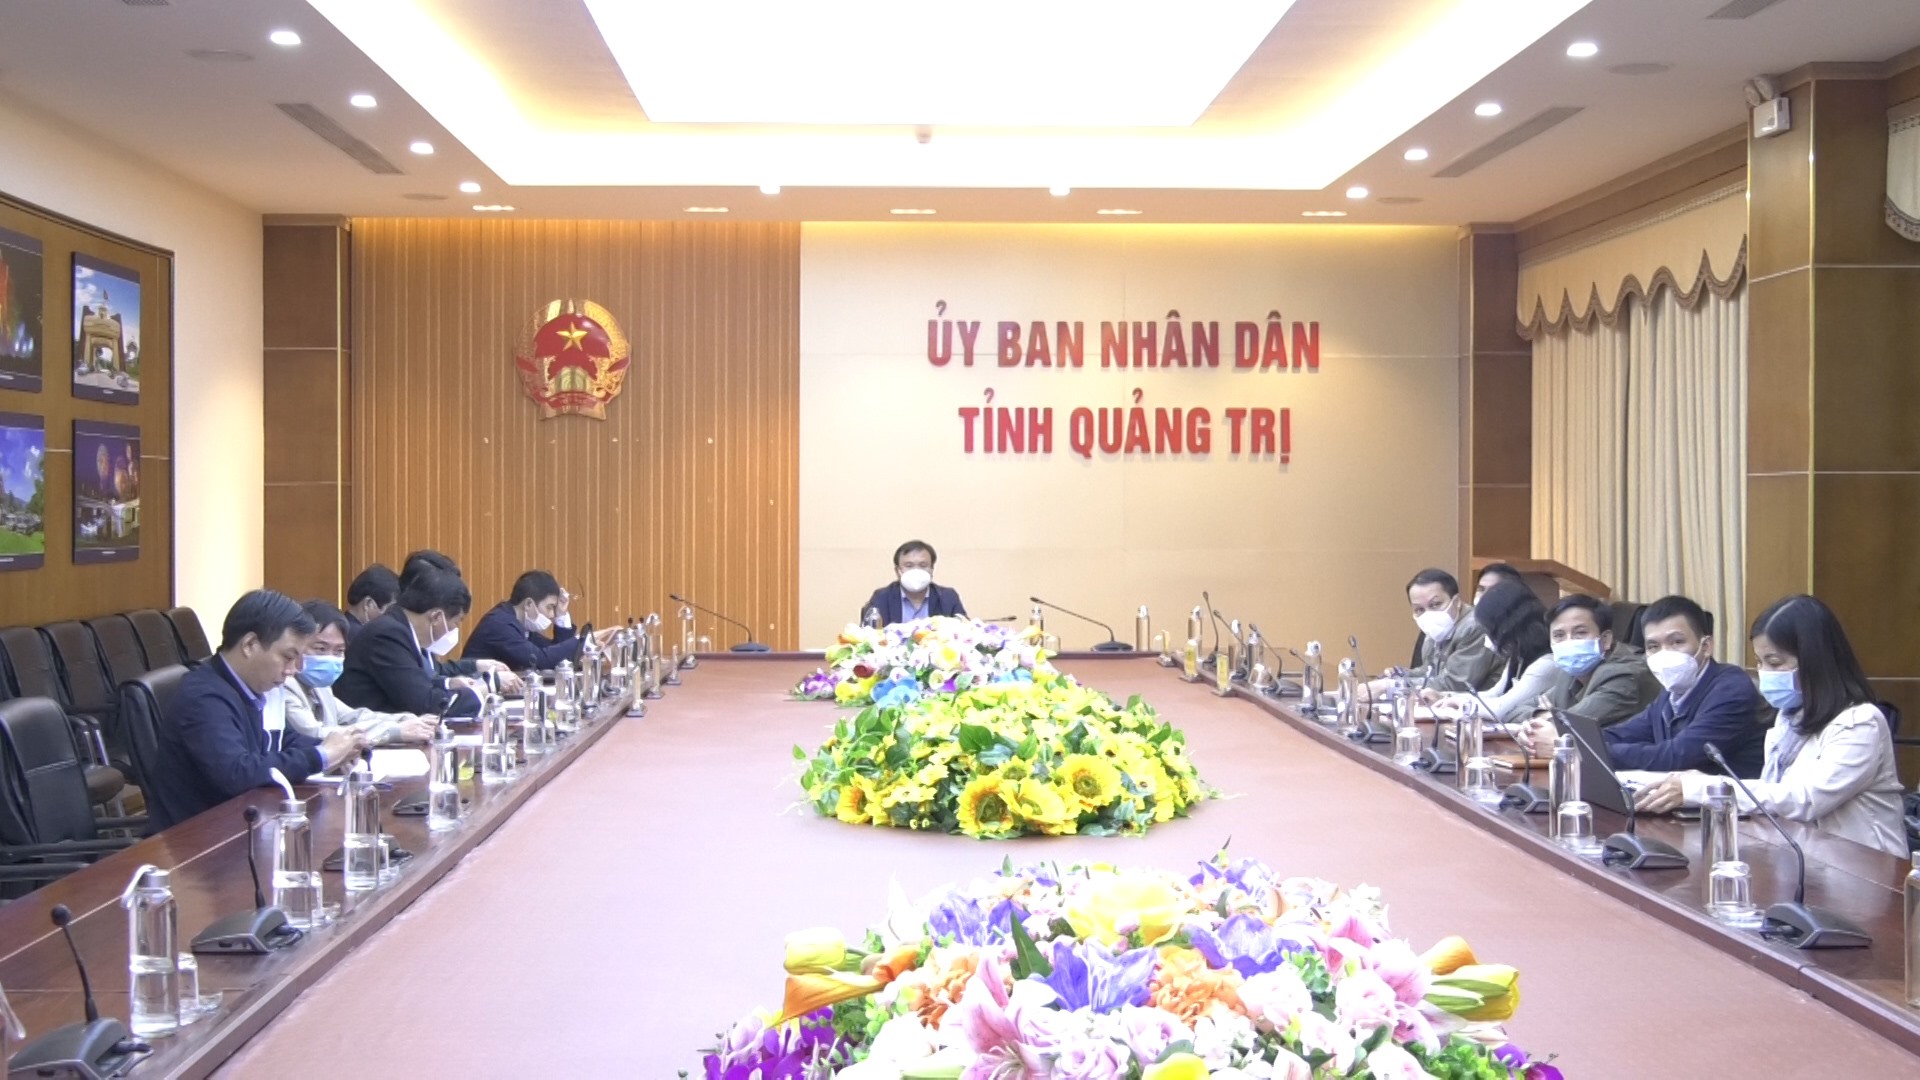 Phó Chủ tịch UBND tỉnh Lê Đức Tiến dự hội nghị tại điểm cầu tỉnh Quảng Trị - Ảnh: P.M.H